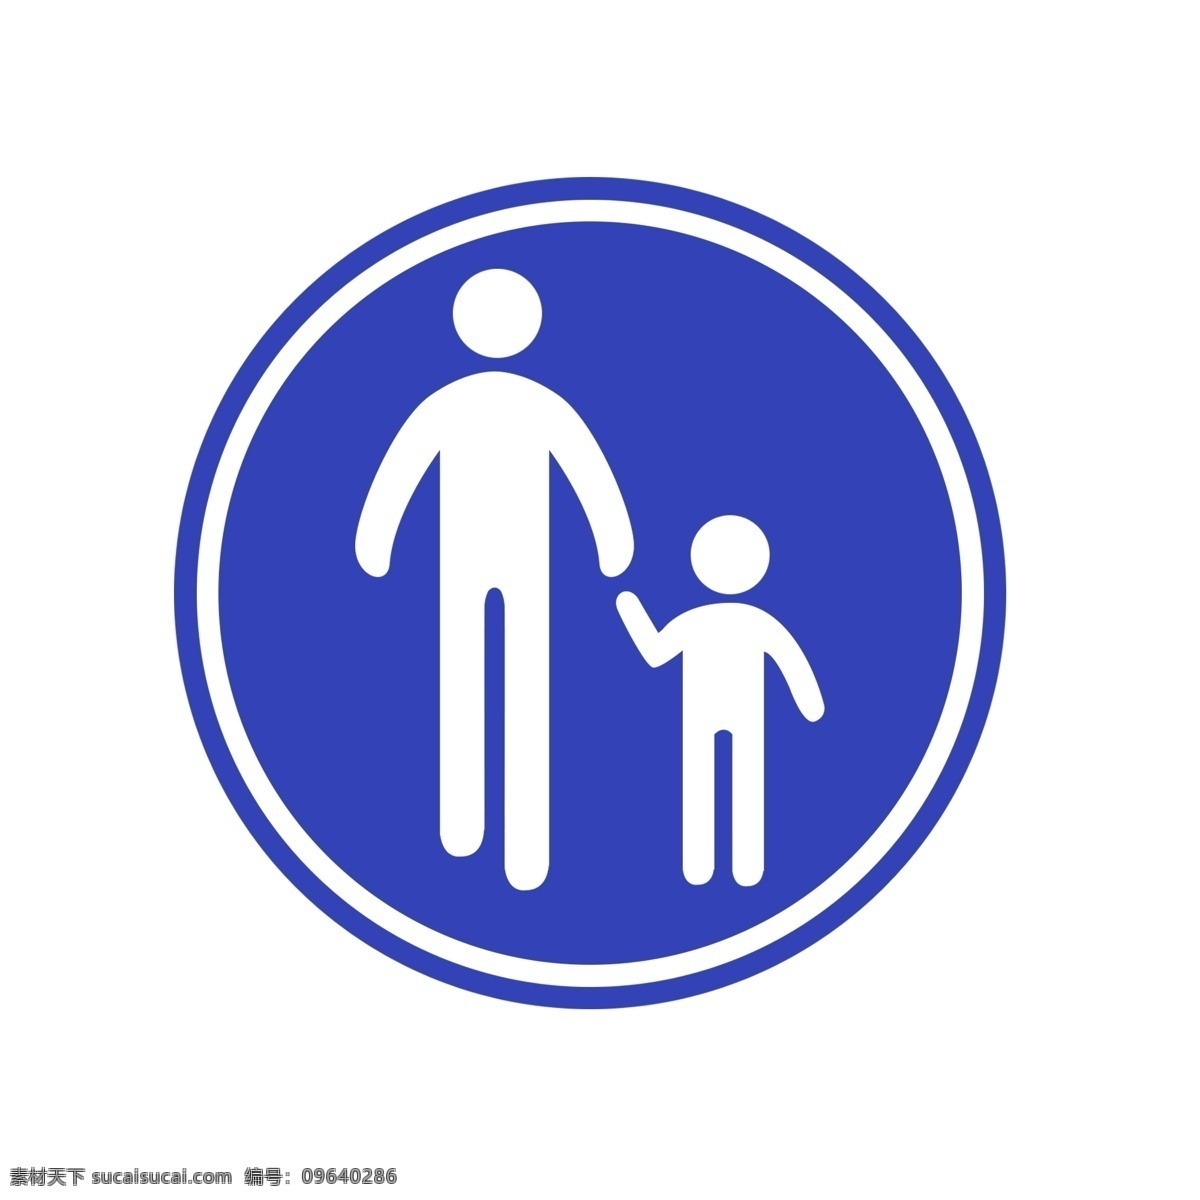 步行 标志牌 透明 底 公共 标示 可爱 男人 标志图标 公共标识标志 蓝色 步行标志 两个小人 圆形